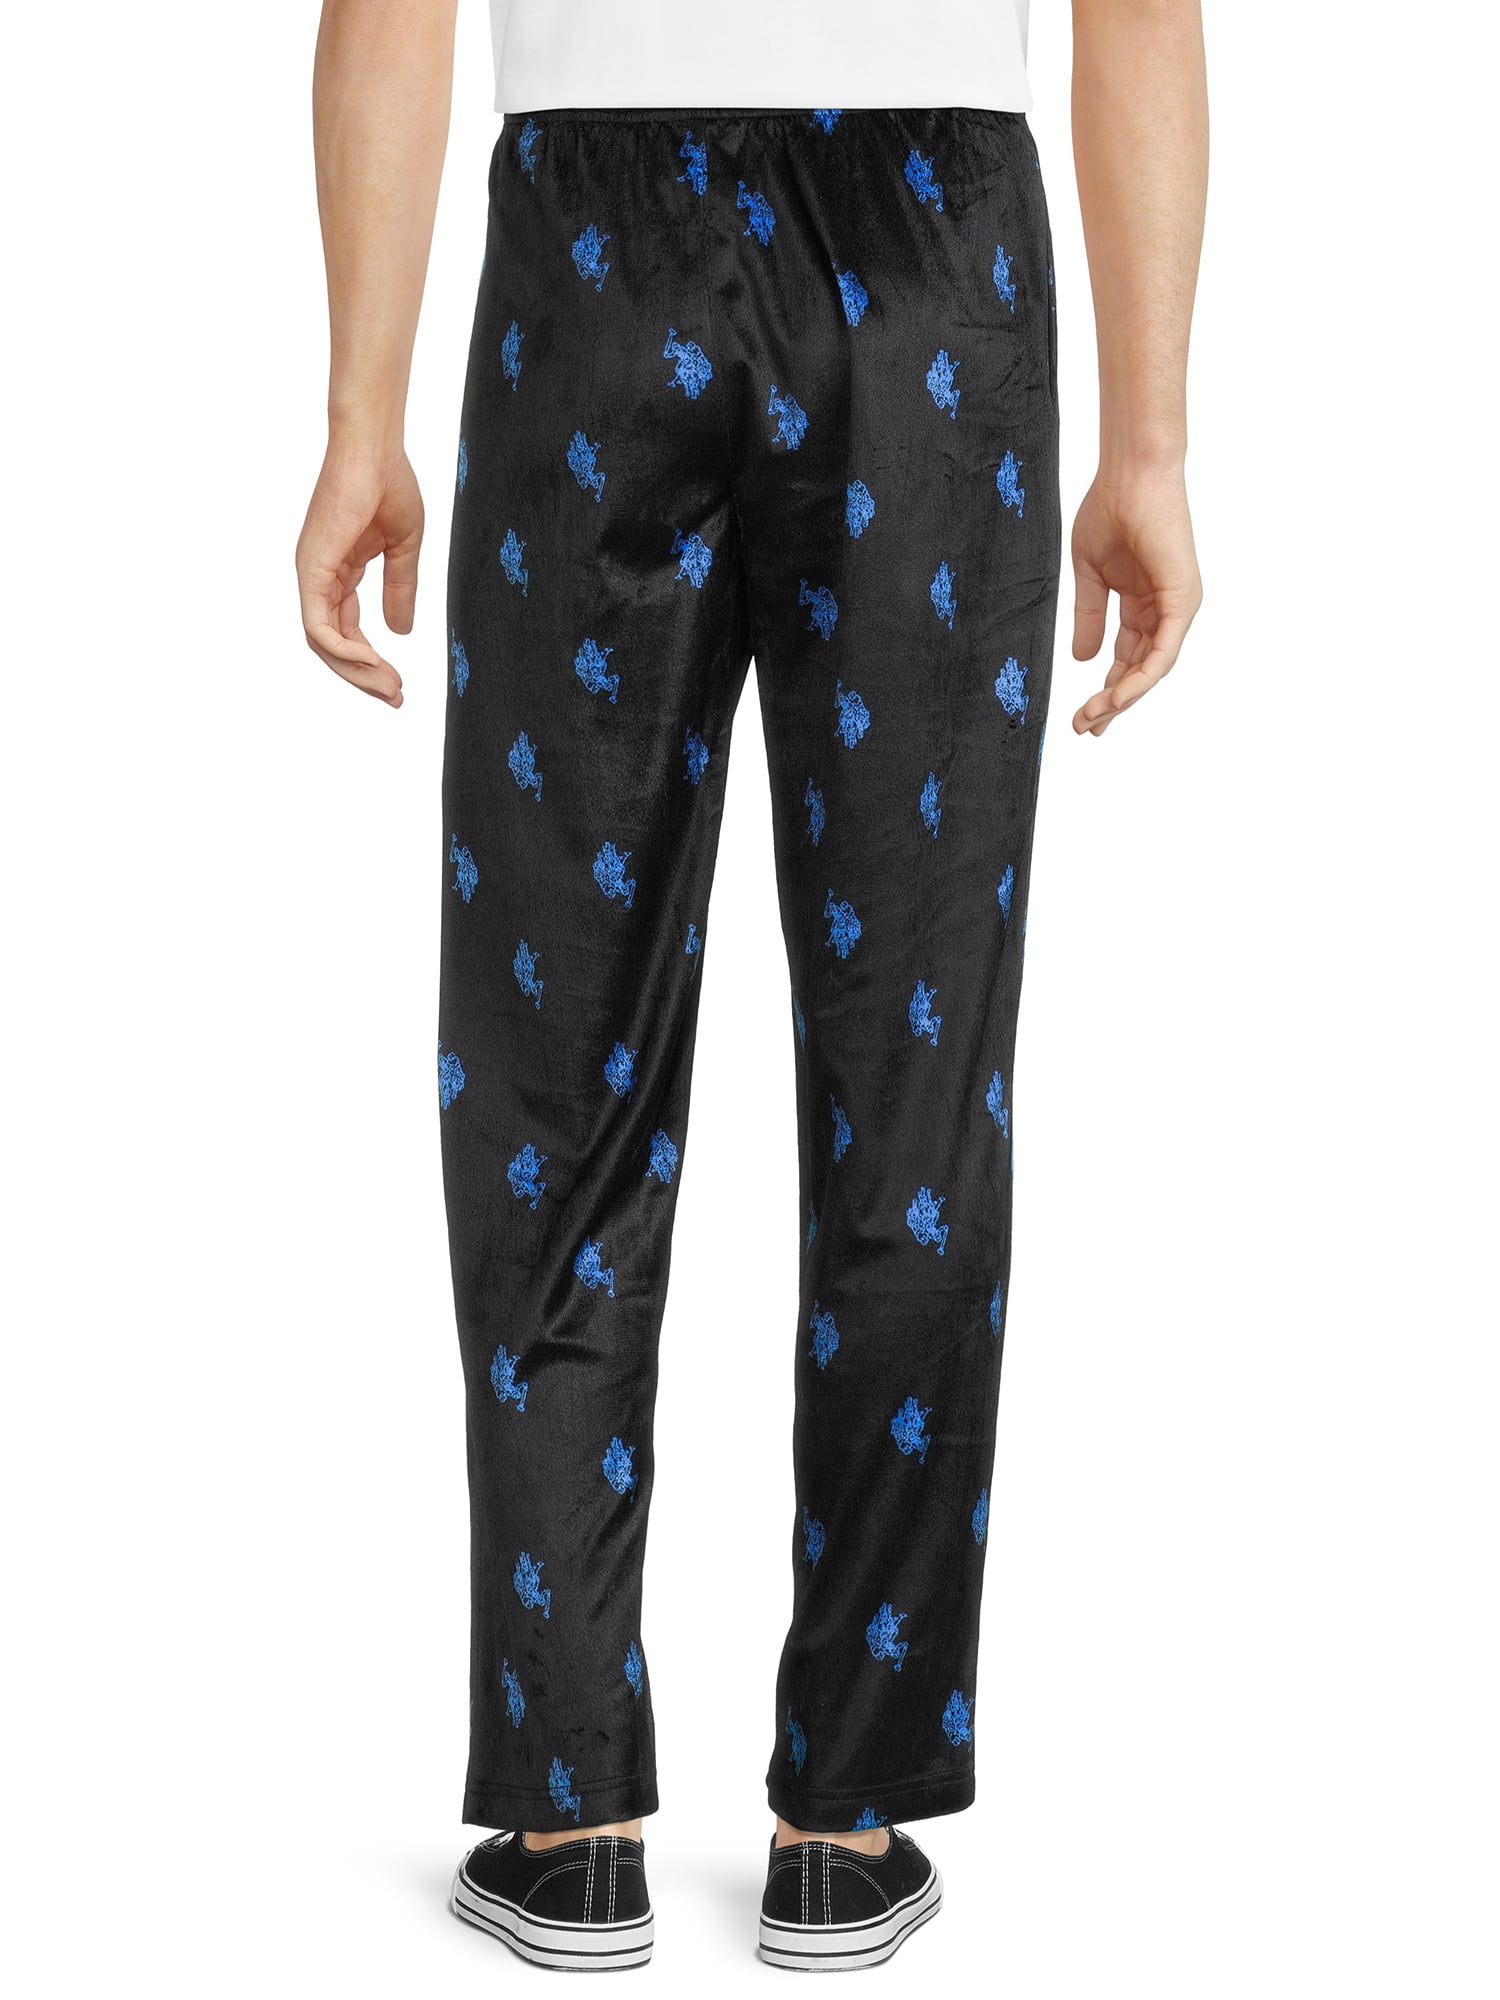 . Polo Assn. Men's Lux Fleece Sleepwear Pant 